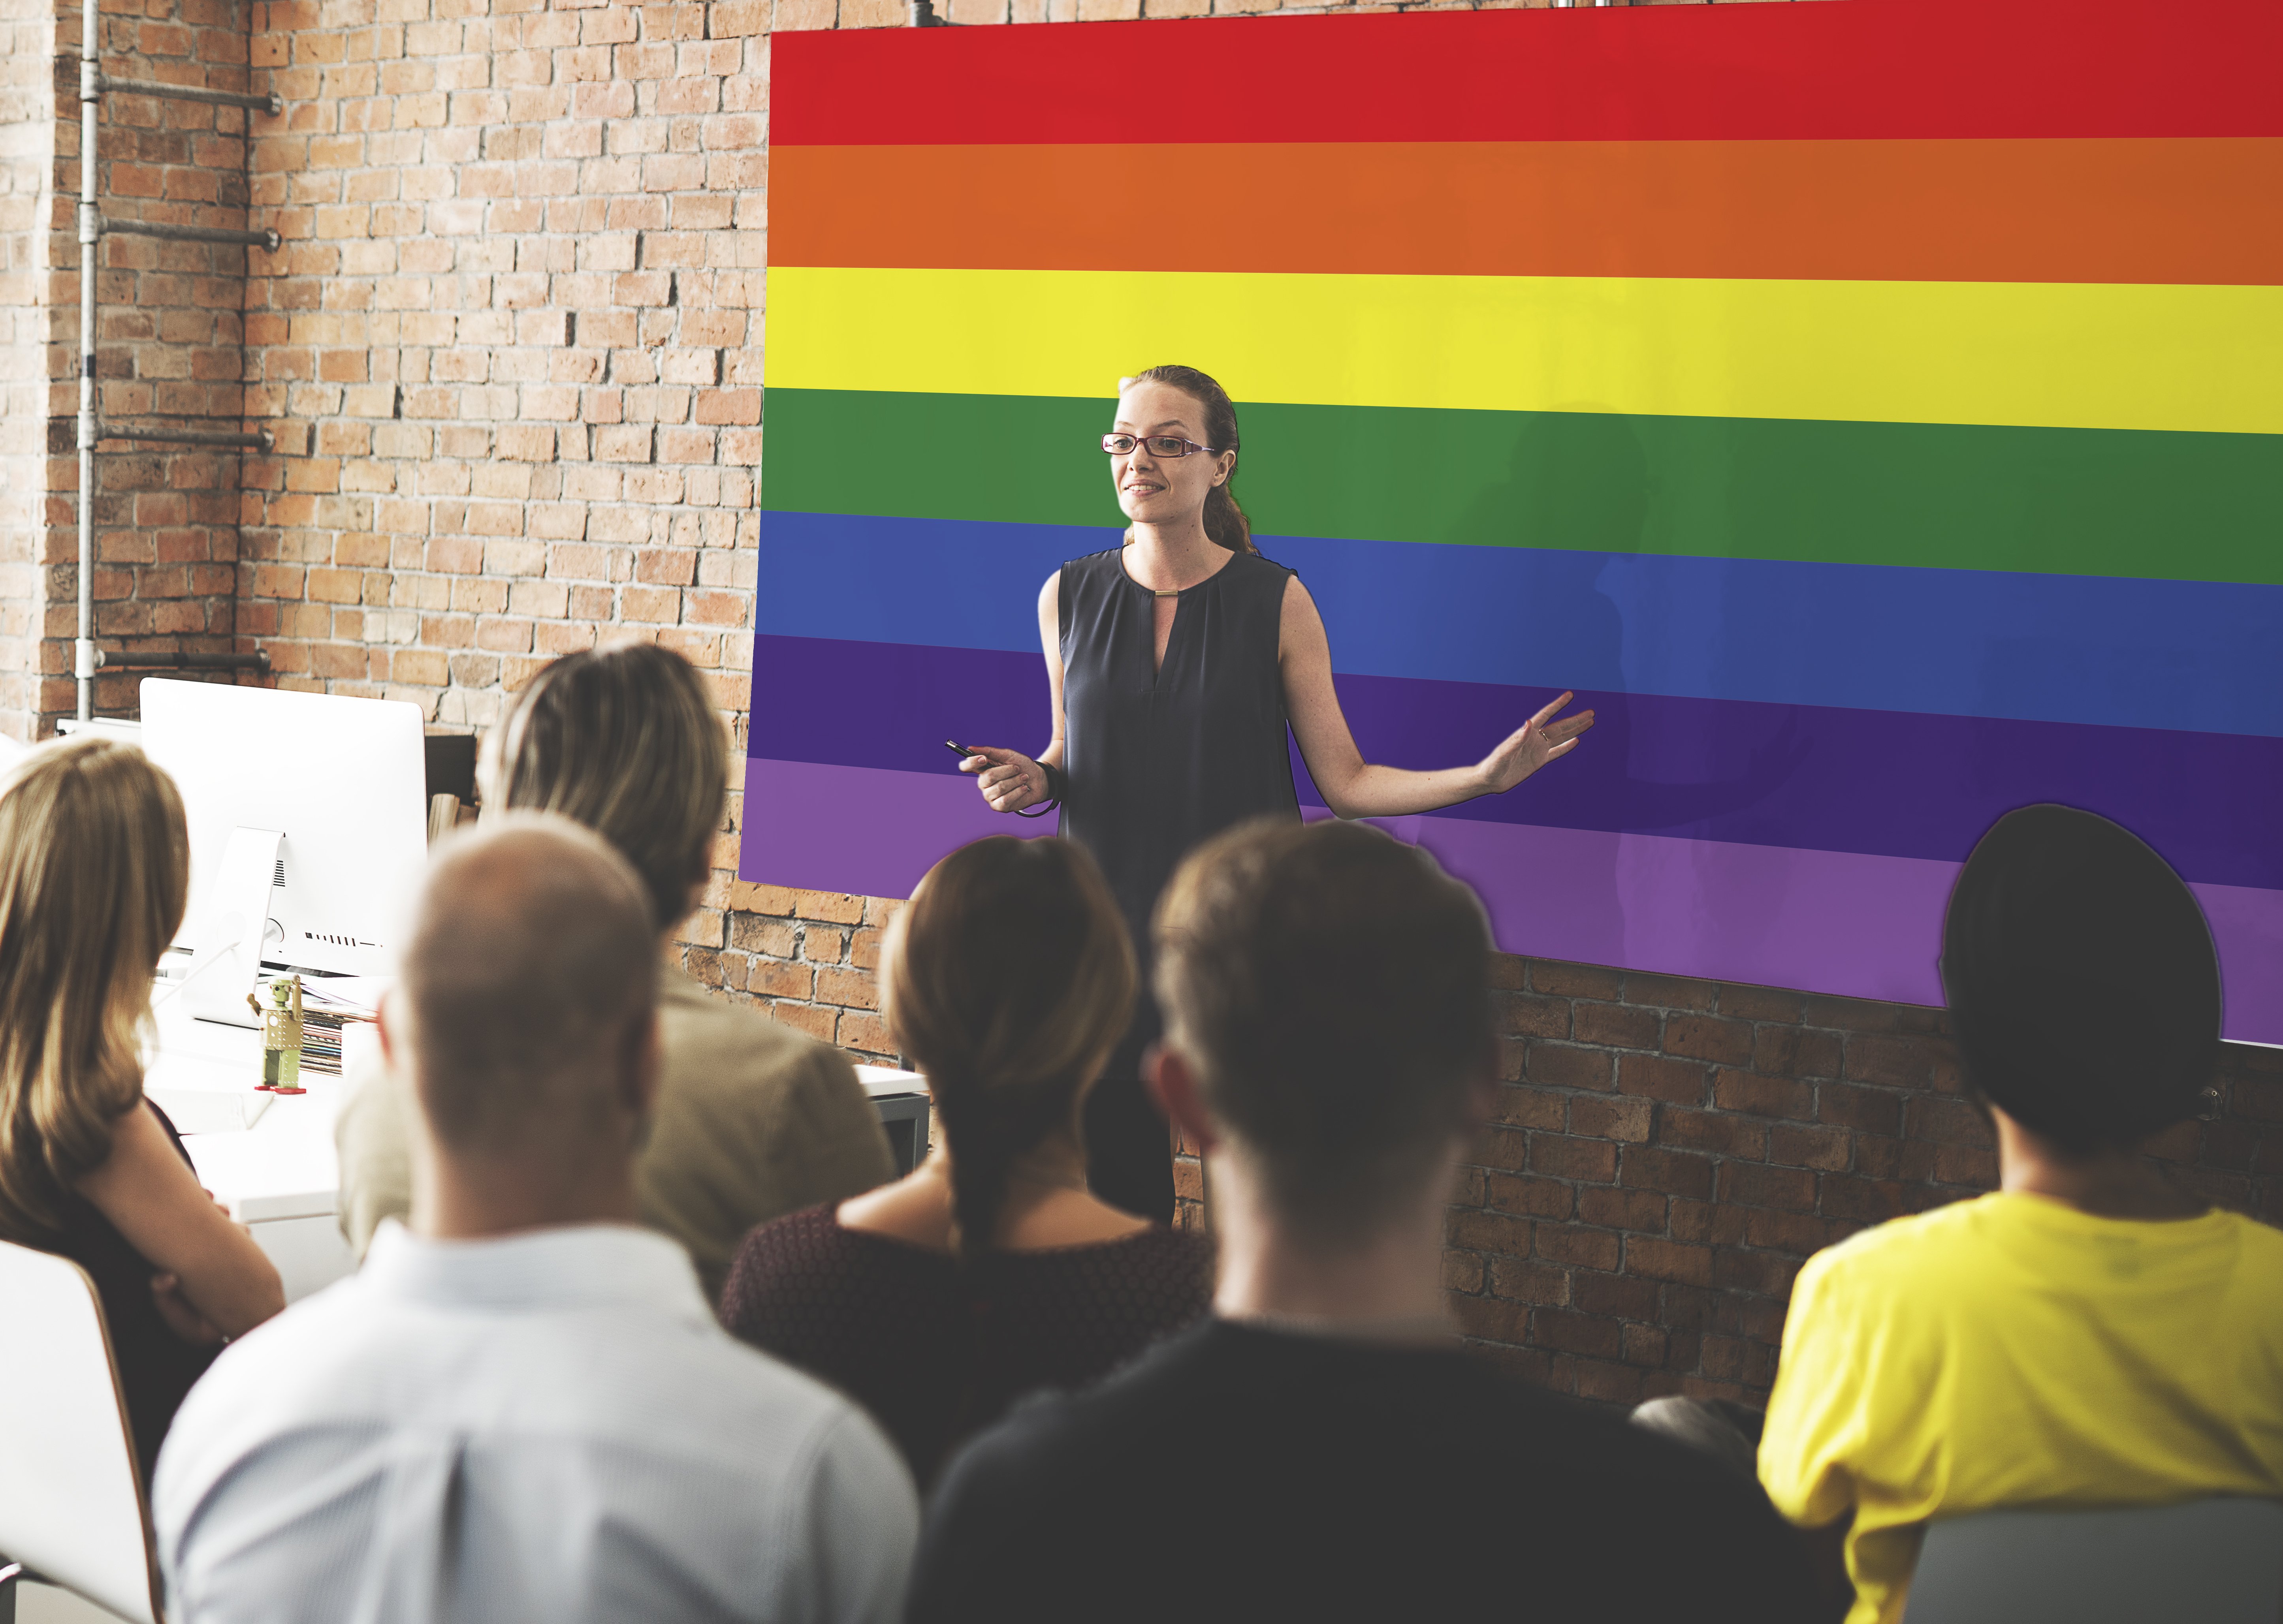 Ein Lehrer steht vor einer LGBTQ+-Flagge. | Quelle: Shutterstock